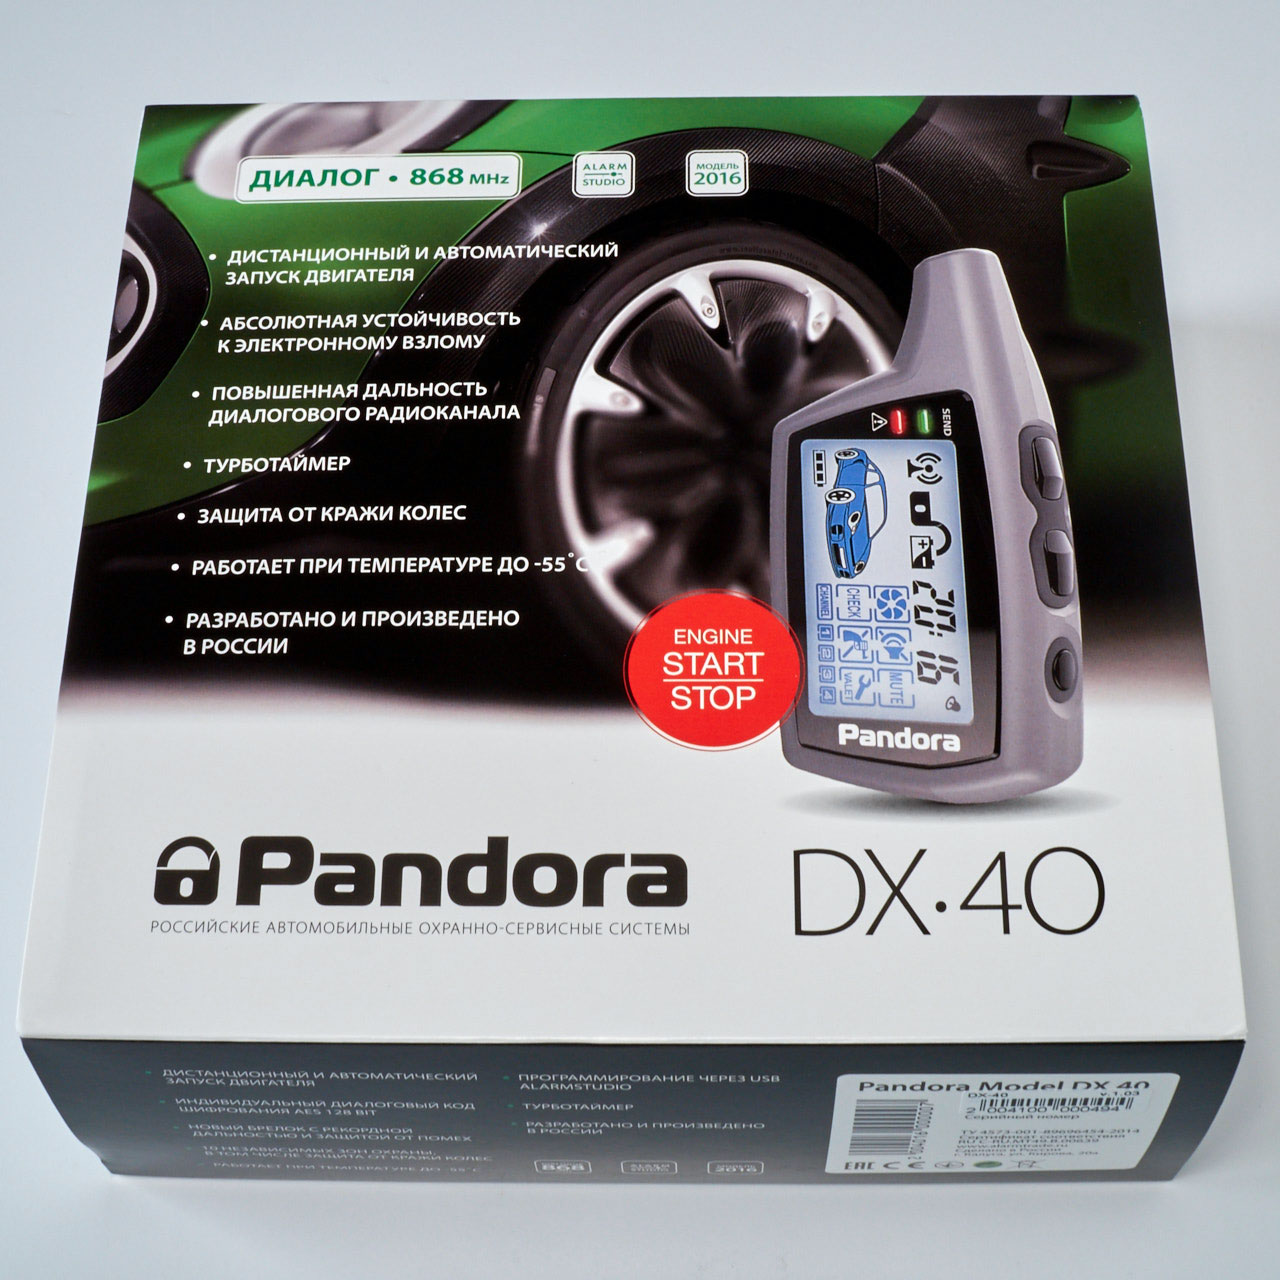 Сигнализация пандора с автозапуском купить. Сигнализация Пандора с автозапуском dx40. Сигнализация Пандора DX 40s. Сигнализация Пандора DX 40. Автозапуск Пандора DX 40.